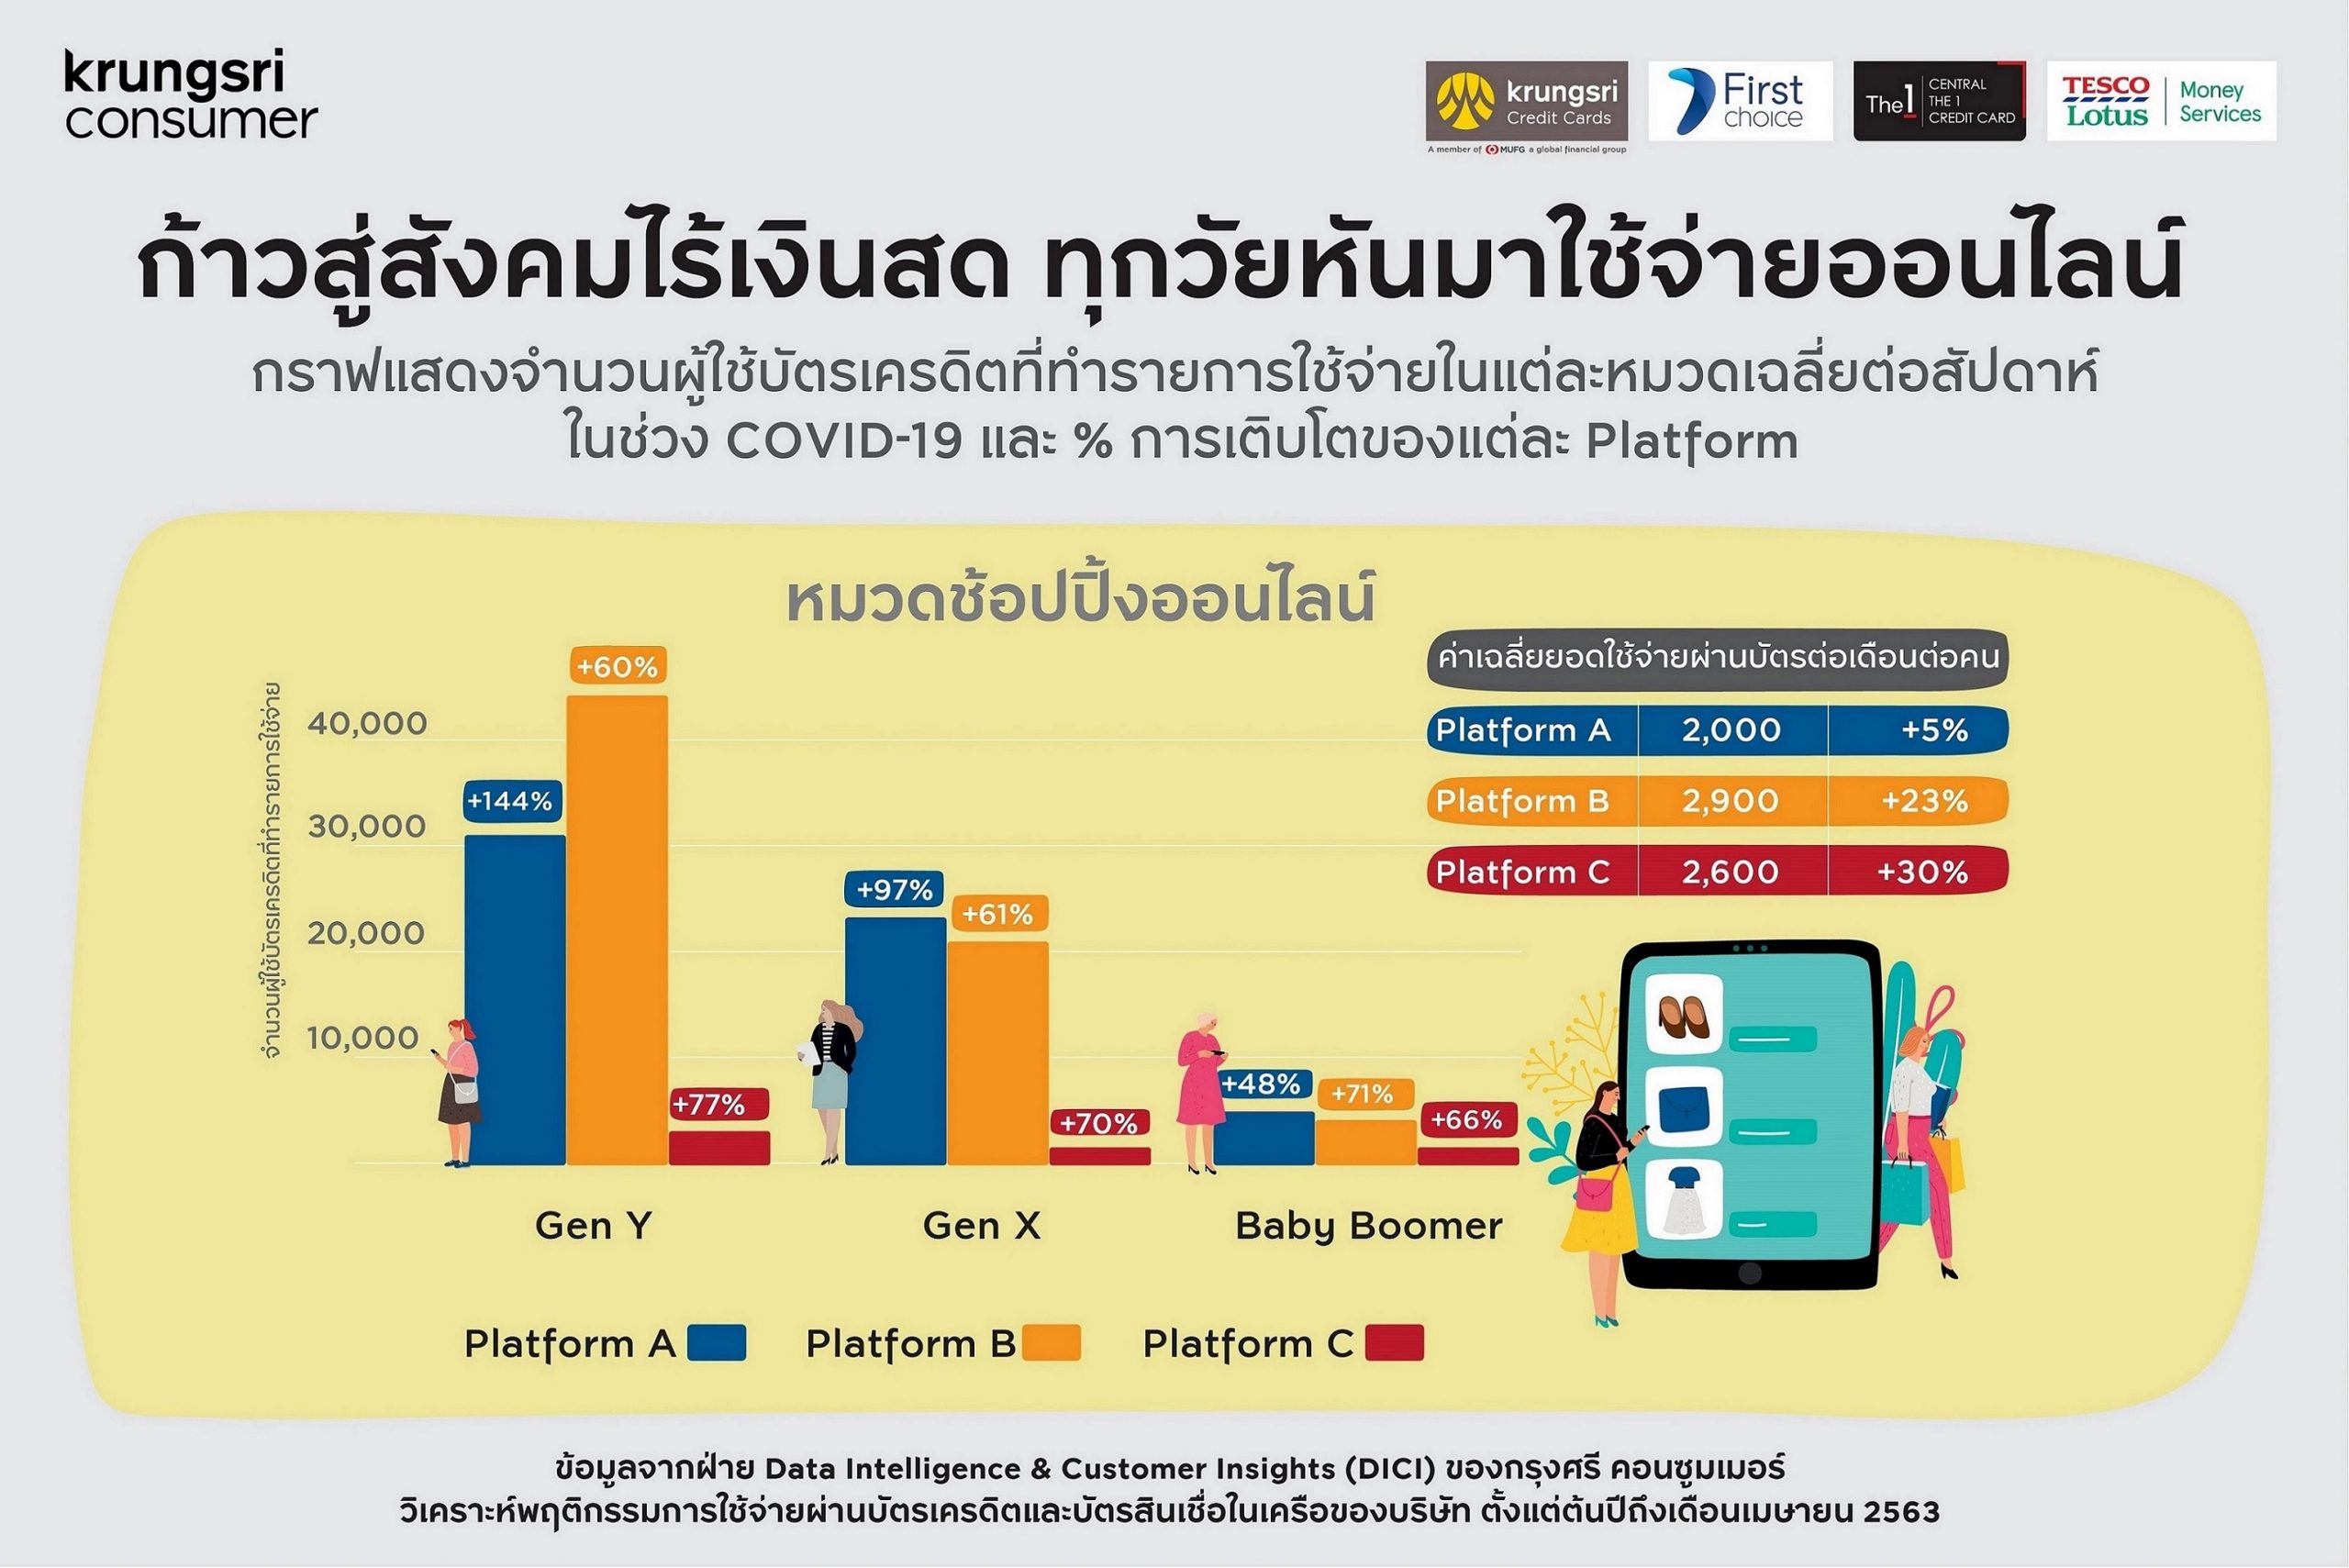 กรุงศรี คอนซูมเมอร์ เผย 5 เทรนด์ผู้บริโภคยุคใหม่ พฤติกรรมการใช้จ่ายผ่านบัตรชี้ ชีวิตวิถีใหม่เร่งสังคมไทยก้าวสู่สังคมไร้เงินสด